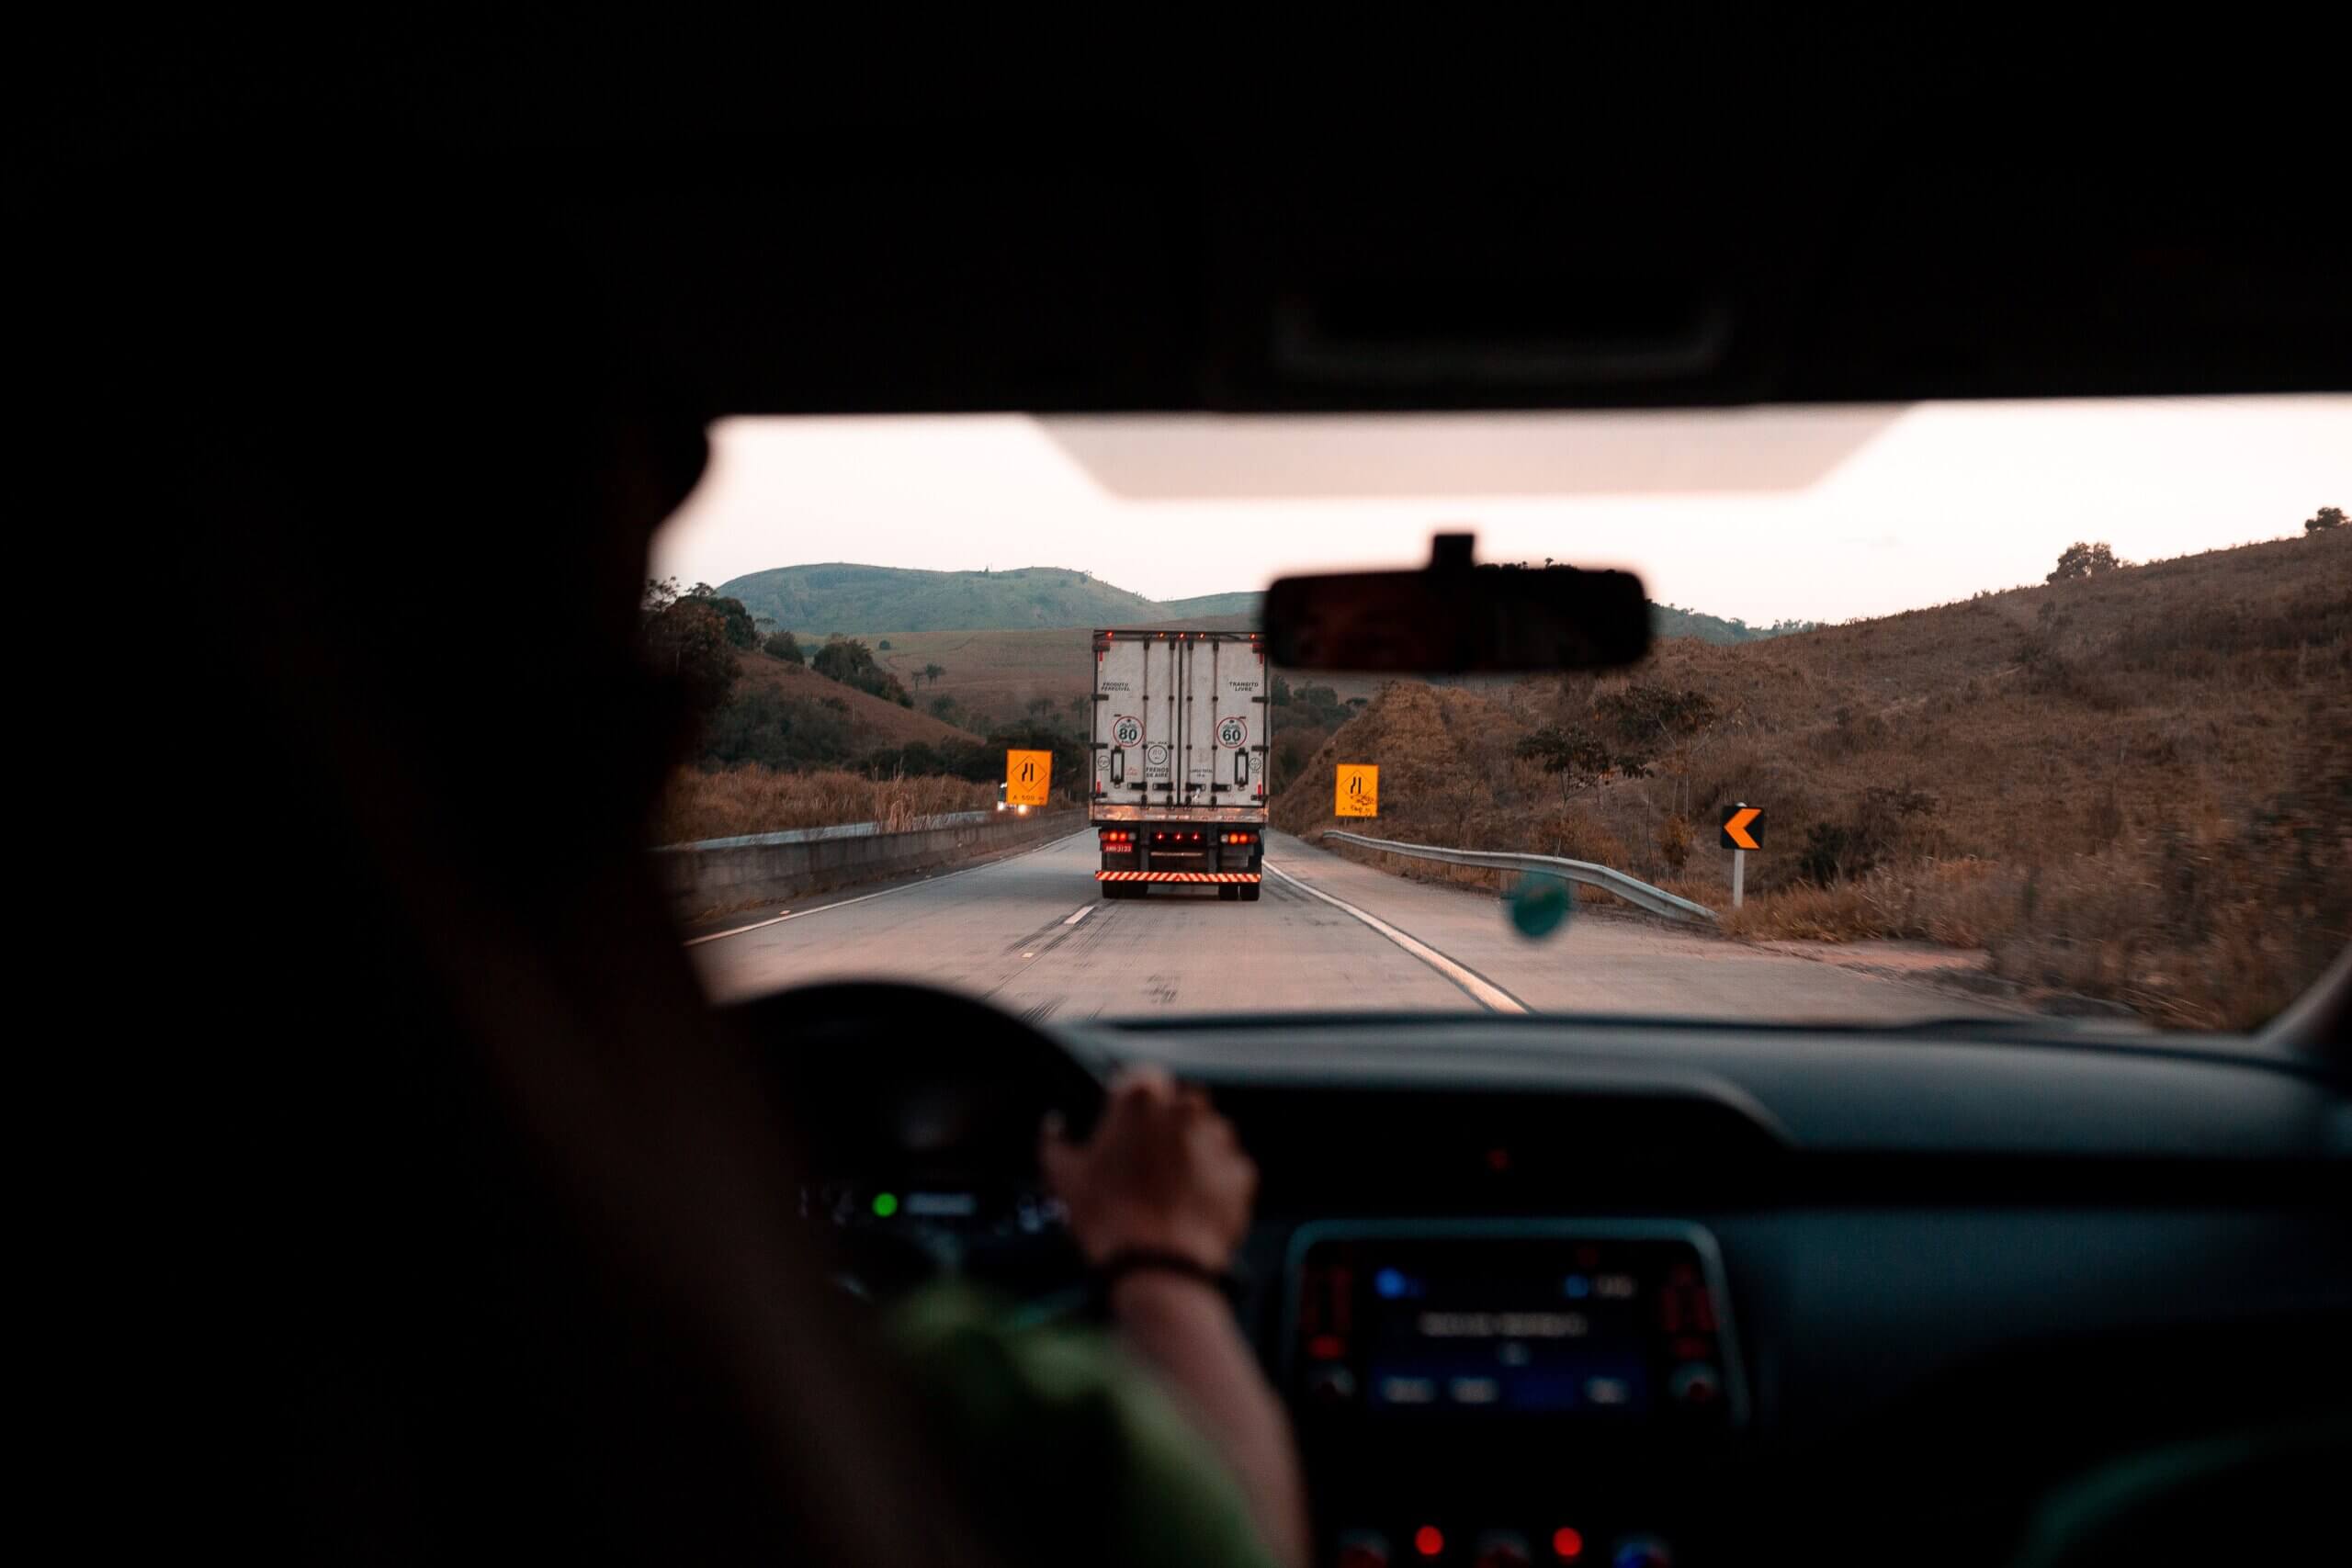 na imagem, vemos uma pessoa dirigindo um carro em uma rodovia, aparentemente ao final da tarde, e em sua frente está um caminhão e algumas placas de sinalização amarelas